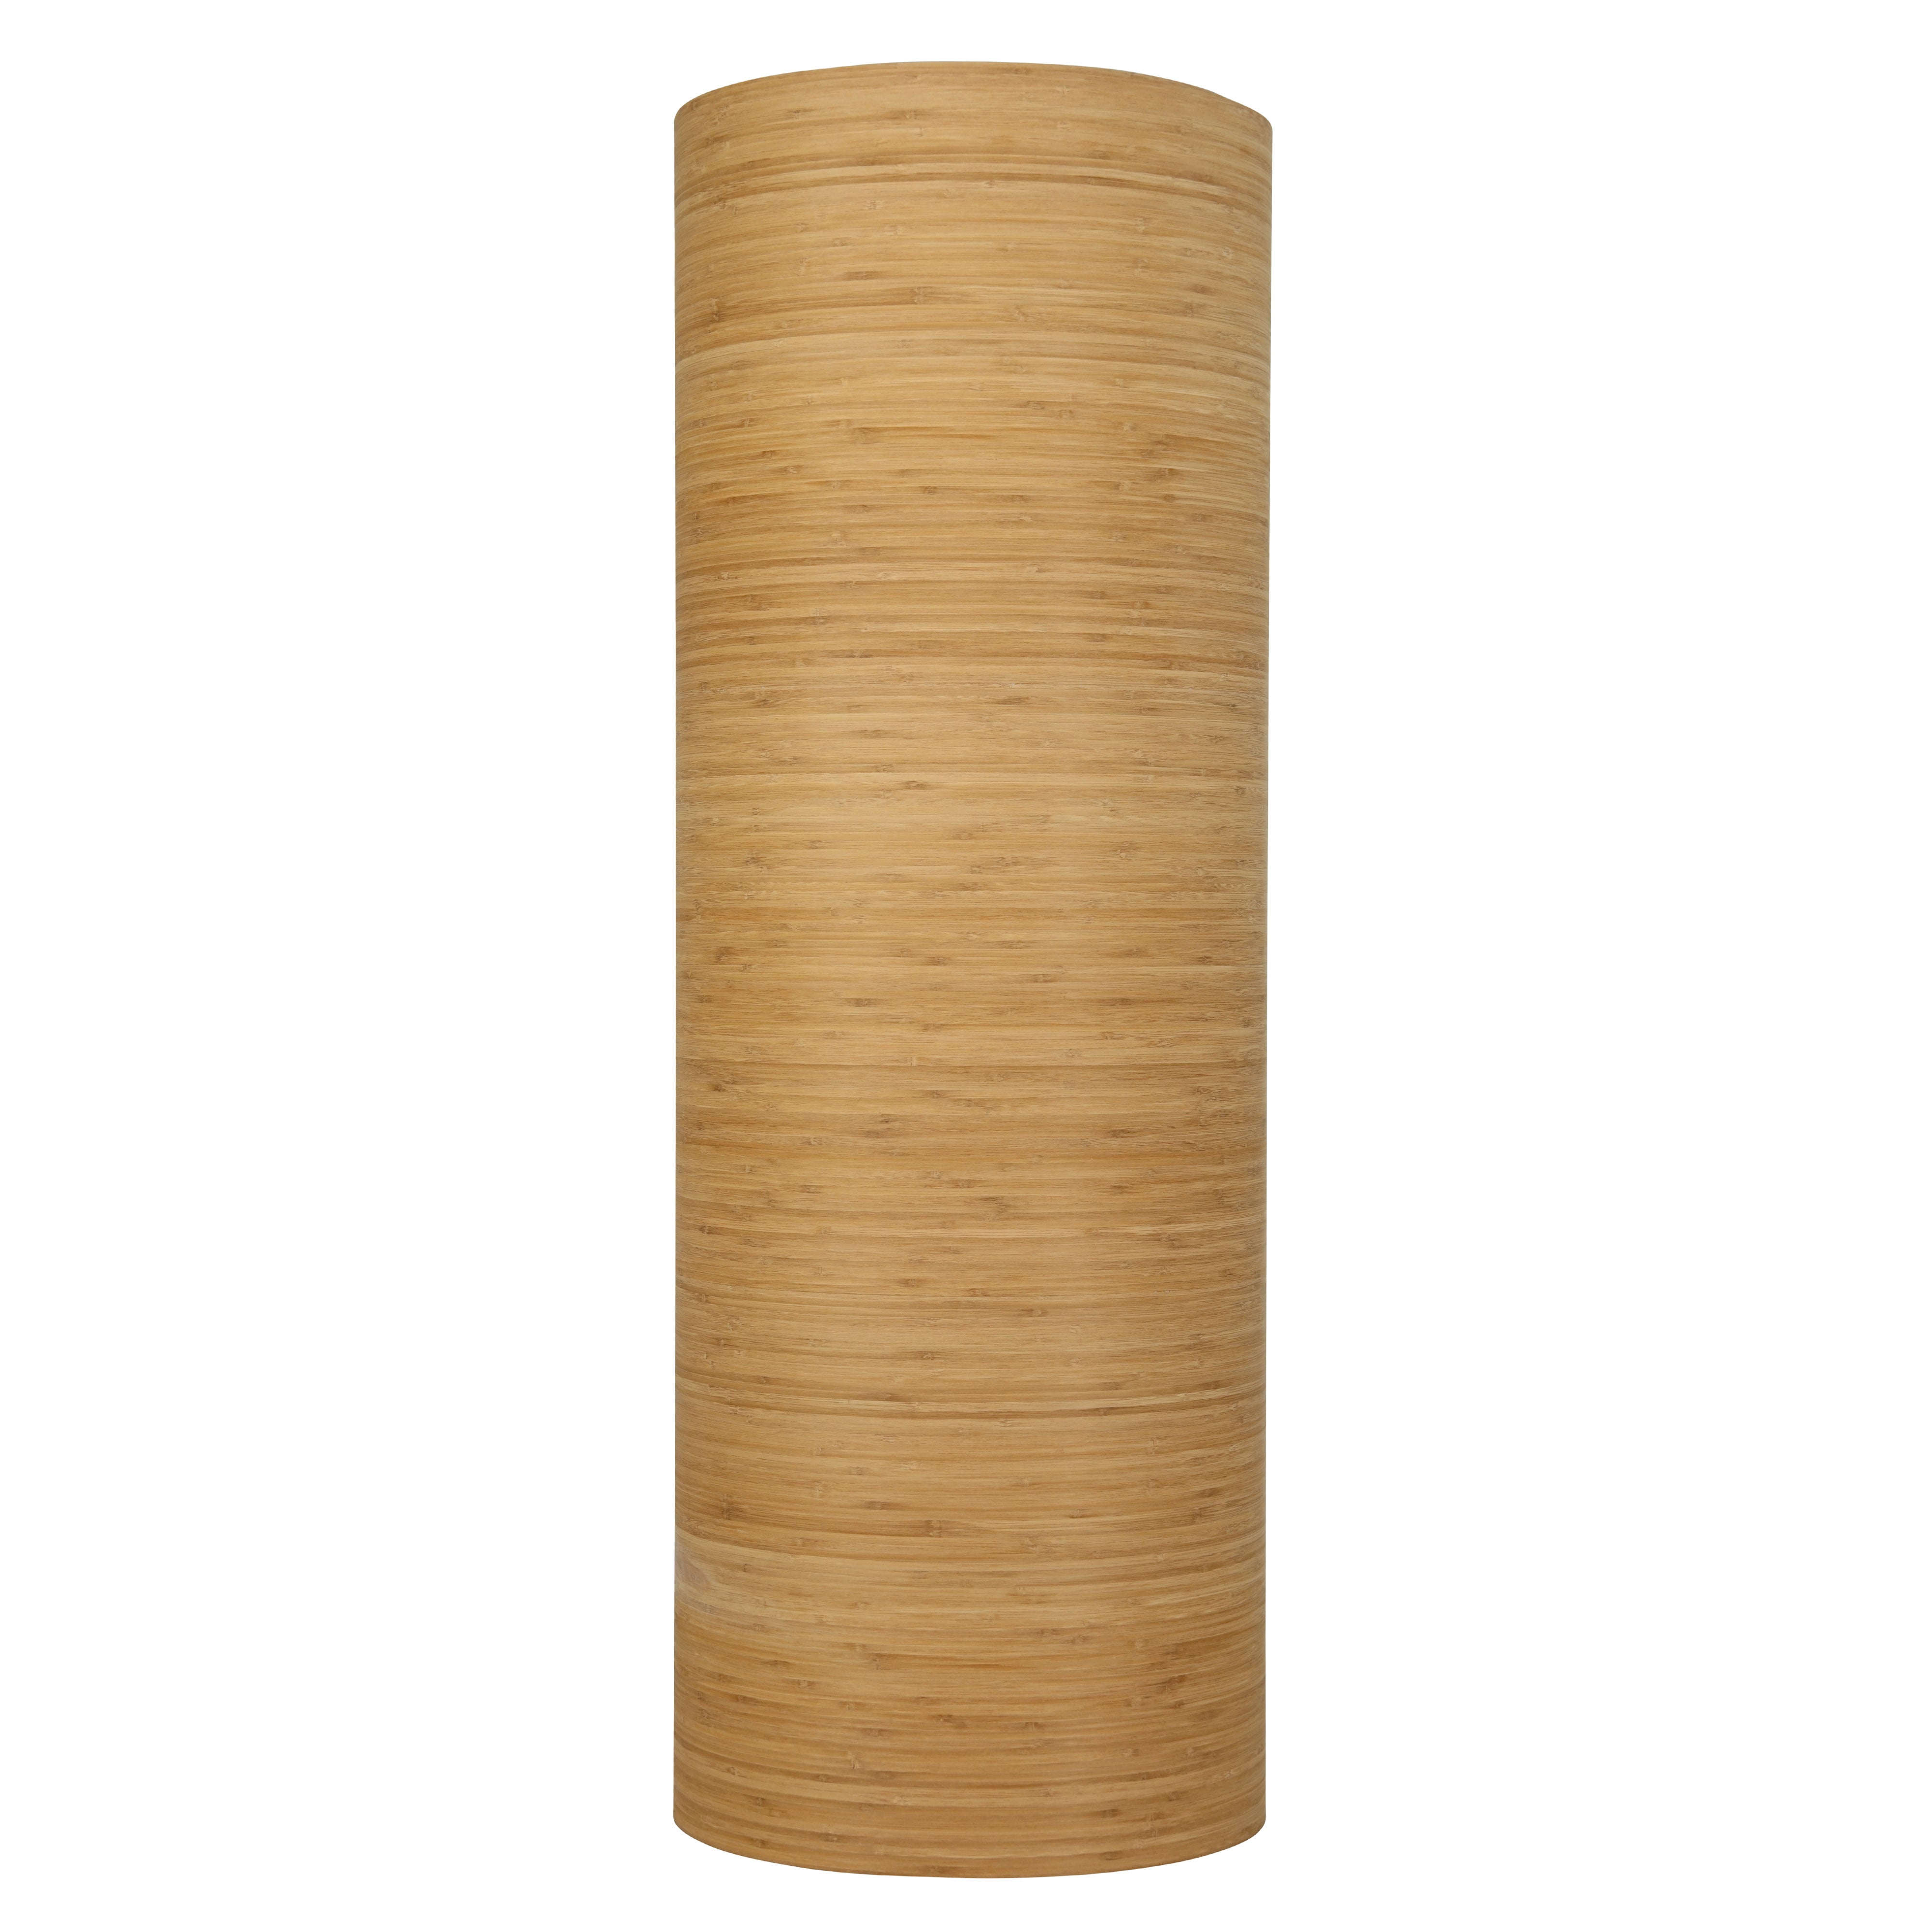 Comprare l'impiallacciatura di bambù?